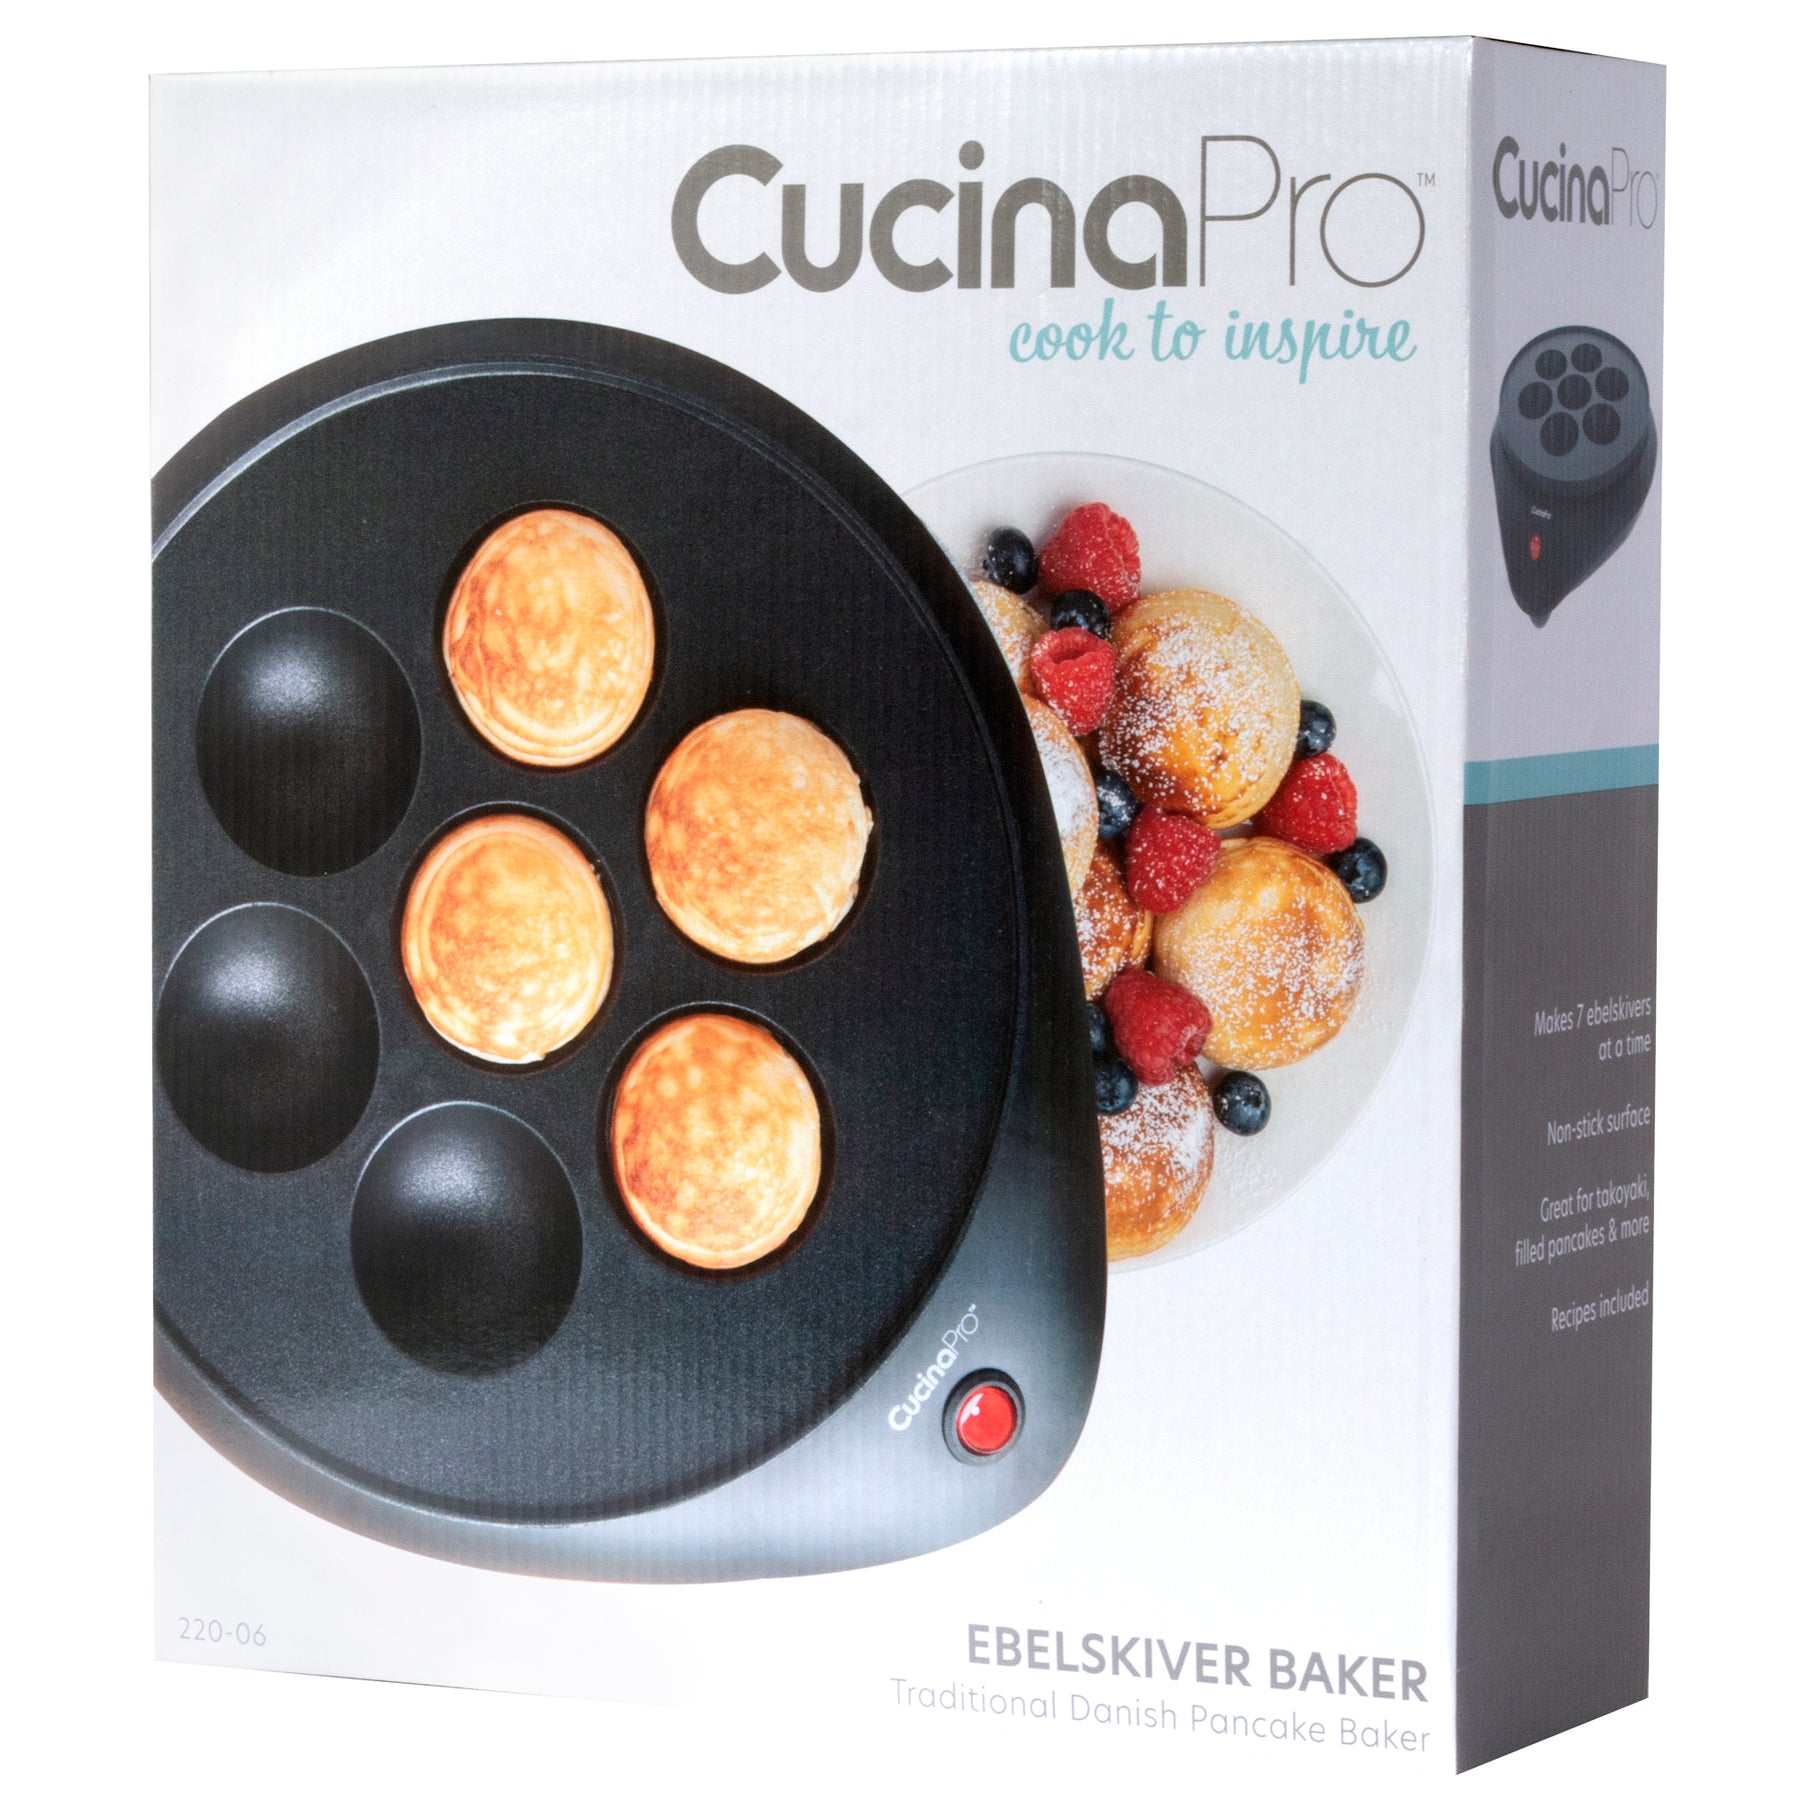 Stuffed Pancake Appliances : CucinaPro Stuffed Pancake Maker